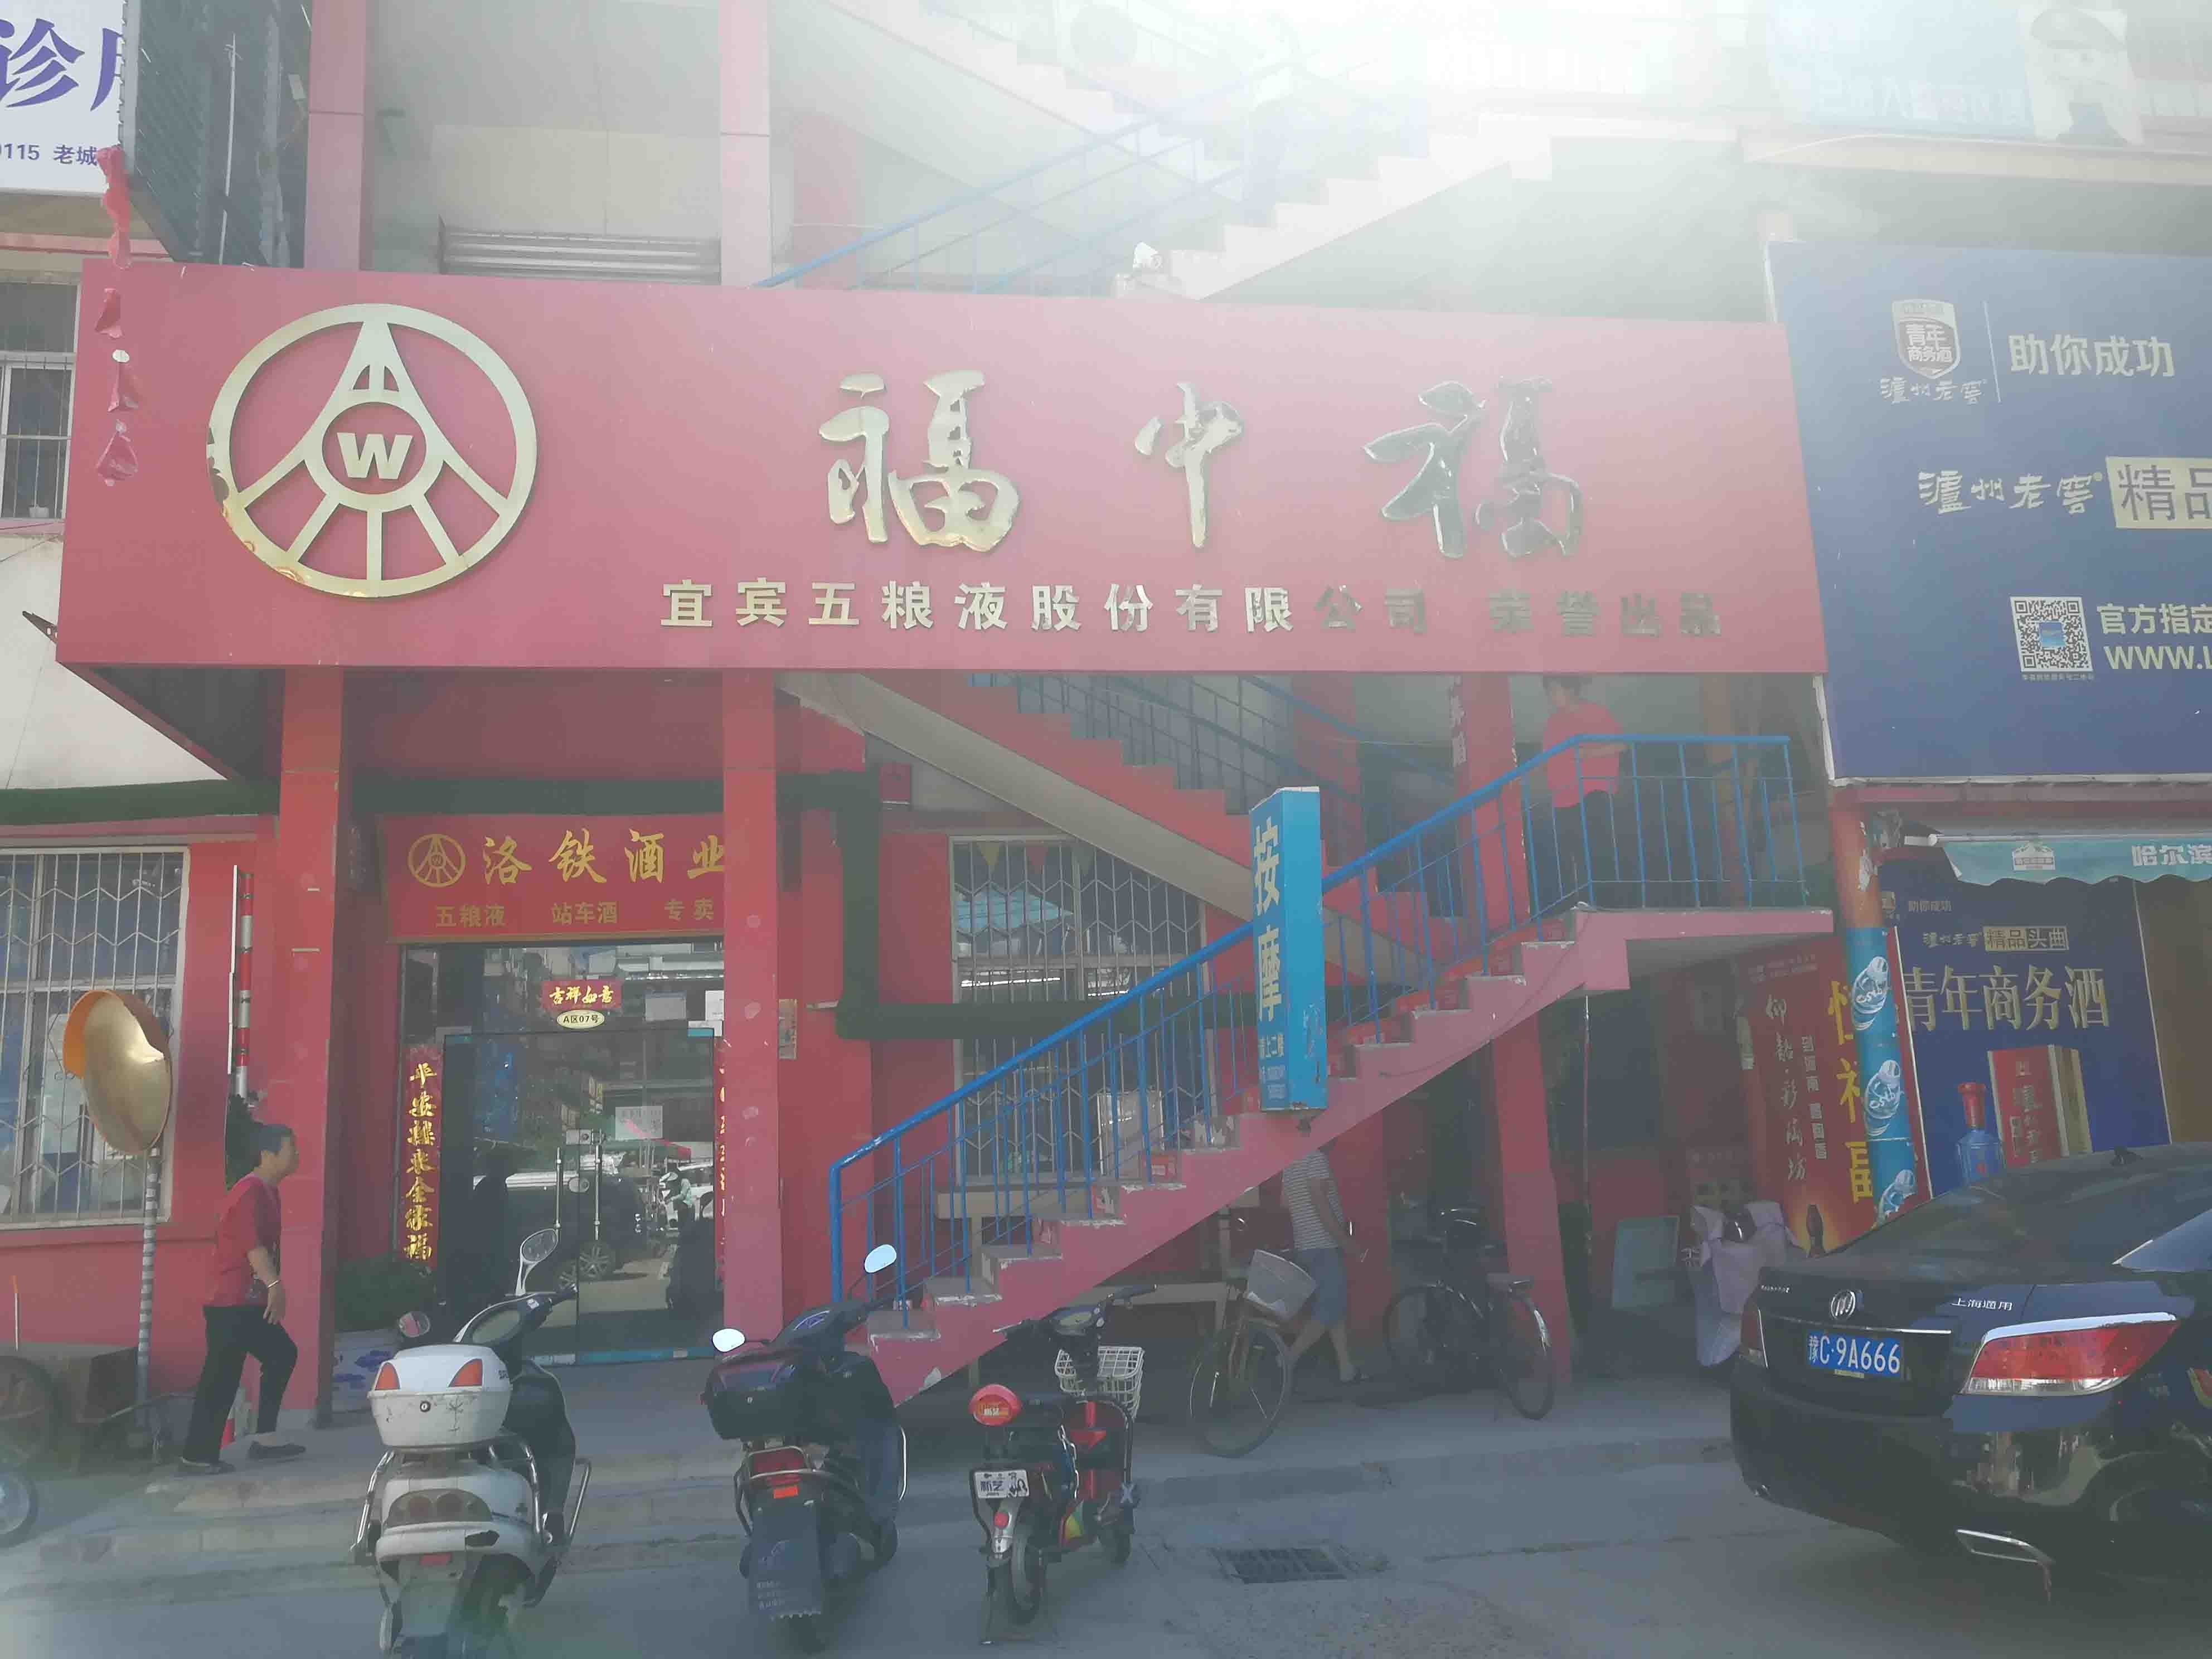 广州路洛阳商业地产出租服务，提供舞蹈的商铺和写字楼选项。无论您是企业还是成熟企业，我们的列表都能满足您的需求